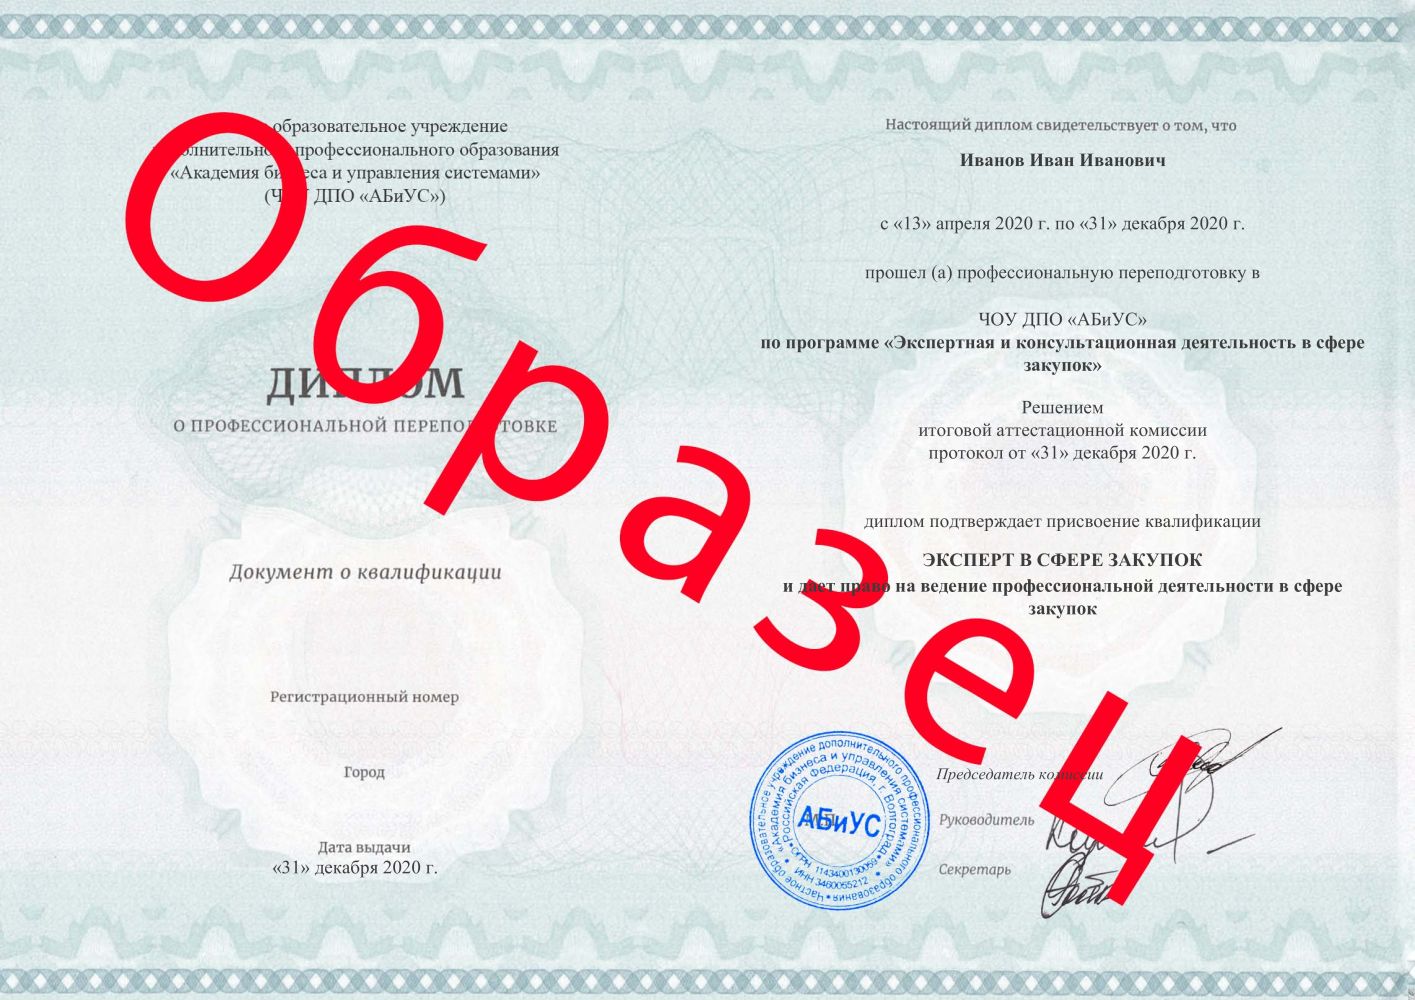 Диплом Экспертная и консультационная деятельность в сфере закупок 260 часов 13625 руб.